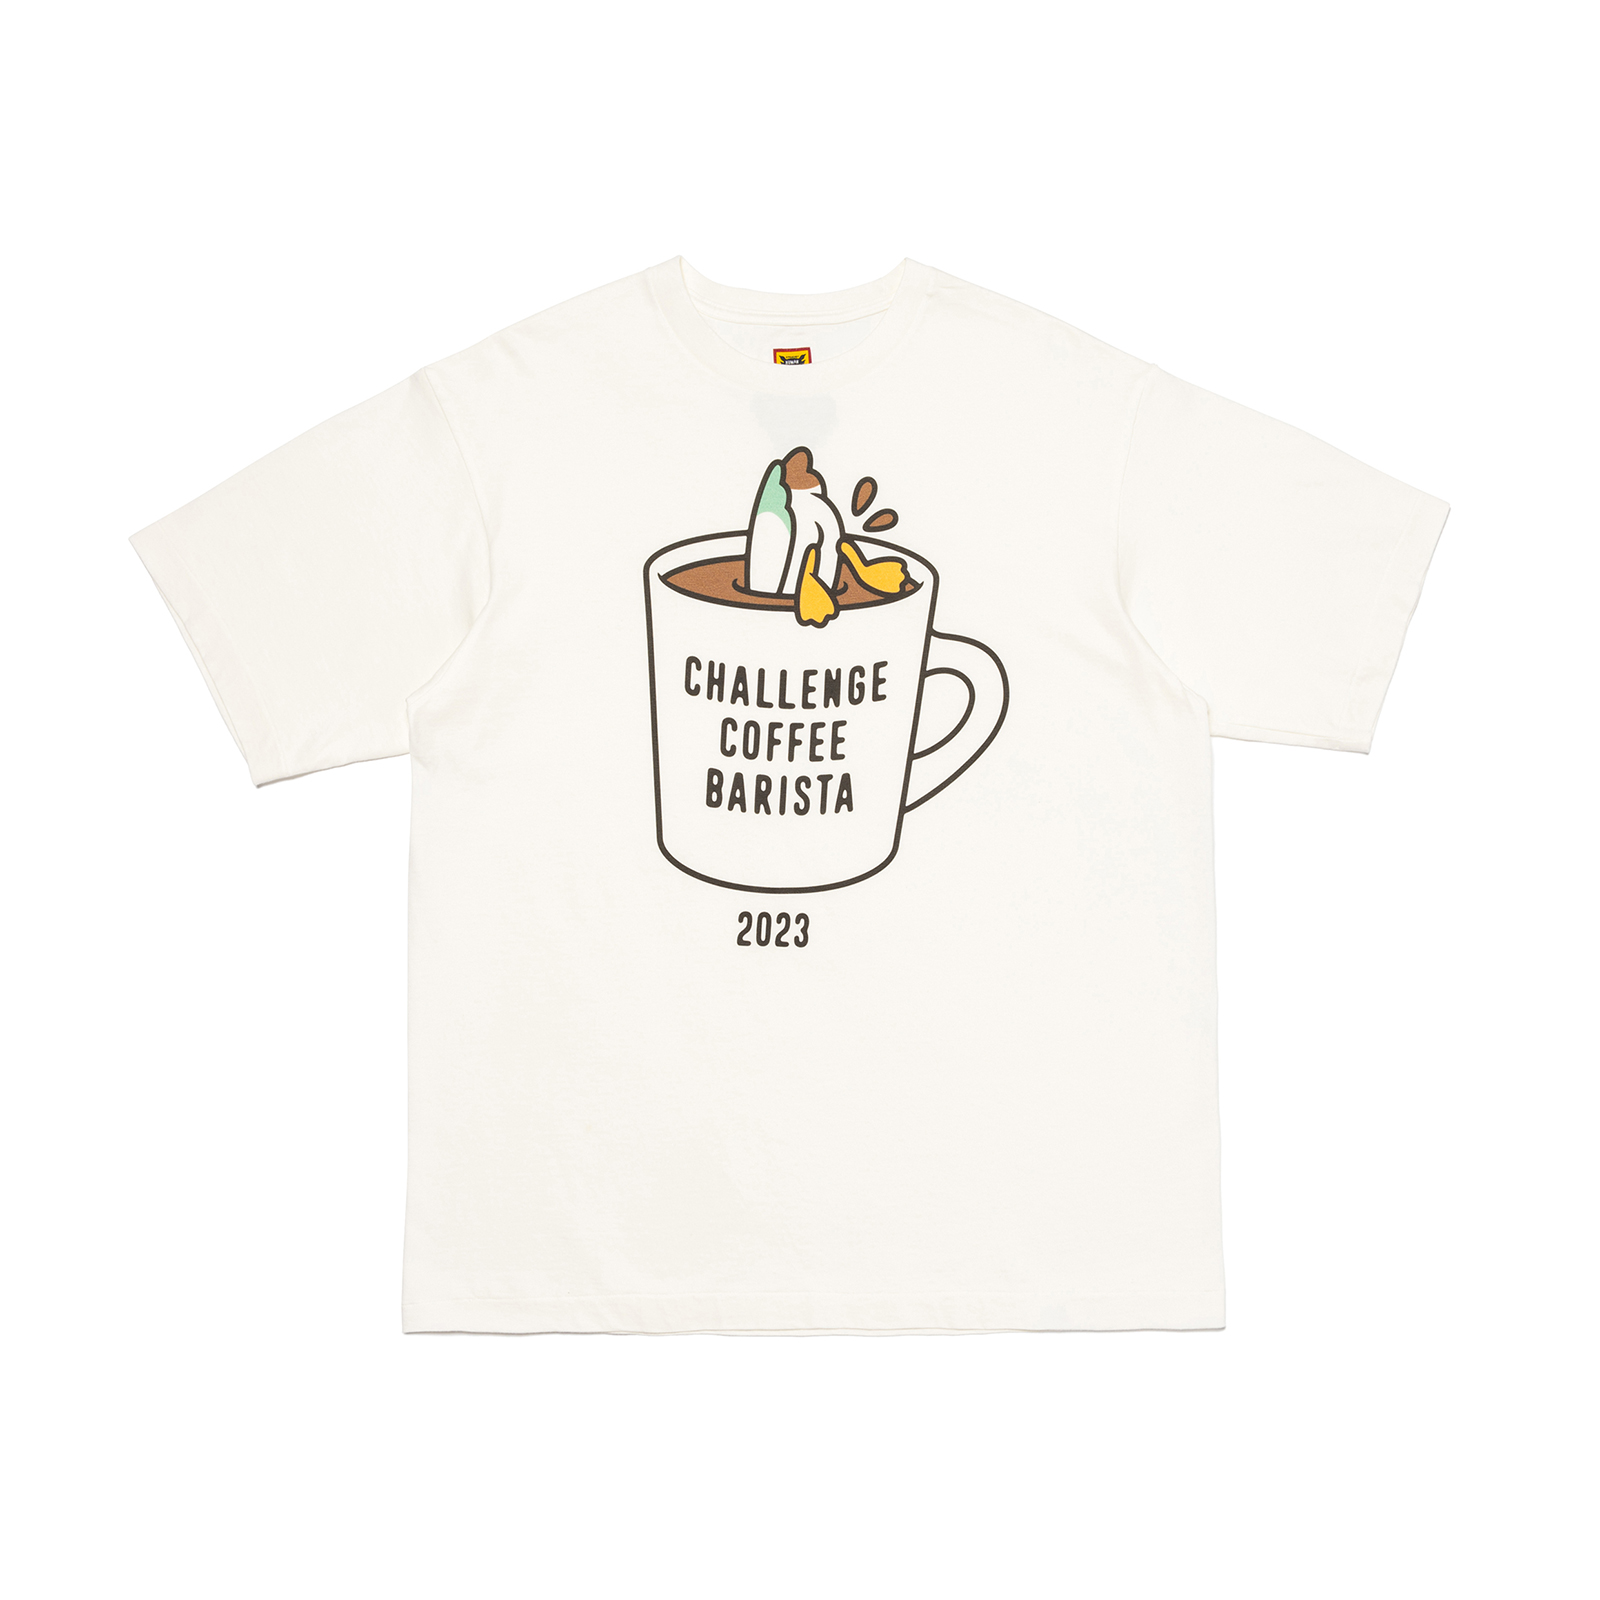 NIGOが障がい者バリスタコンペティションCHALLENGE COFFEE BARISTA 2023の大会Tシャツをデザイン